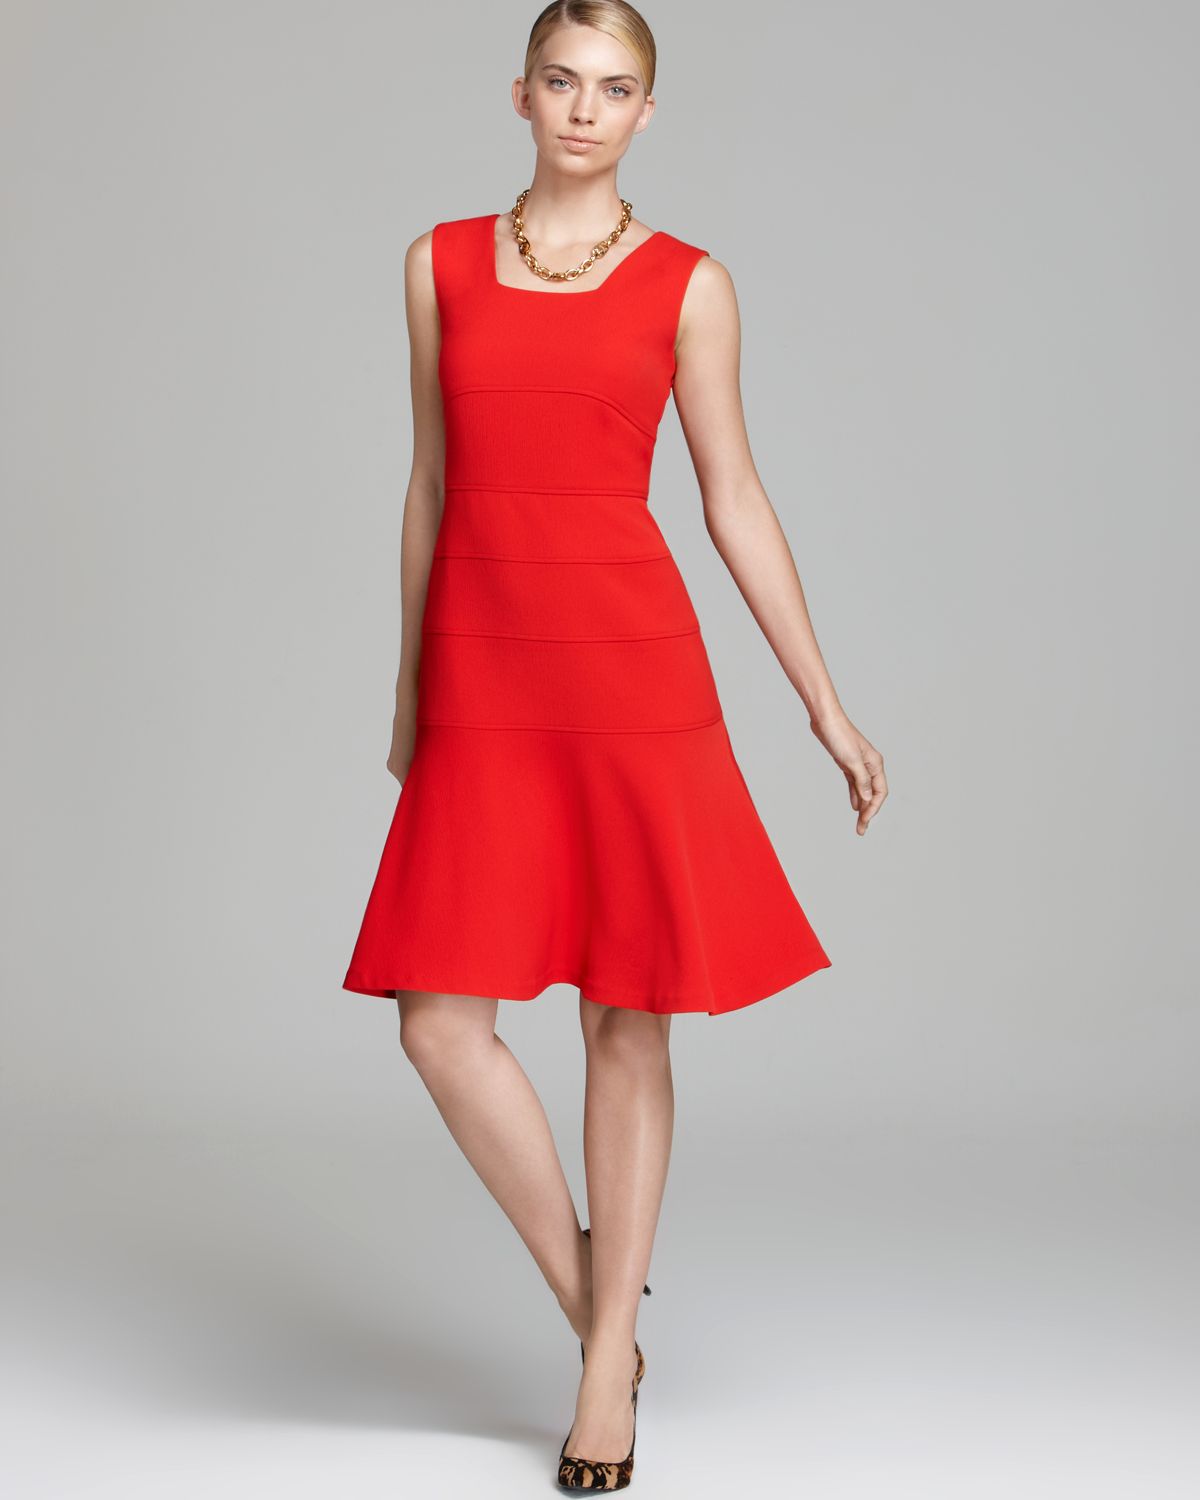 Lyst - Anne klein Knit Swing Dress Sleeveless in Red